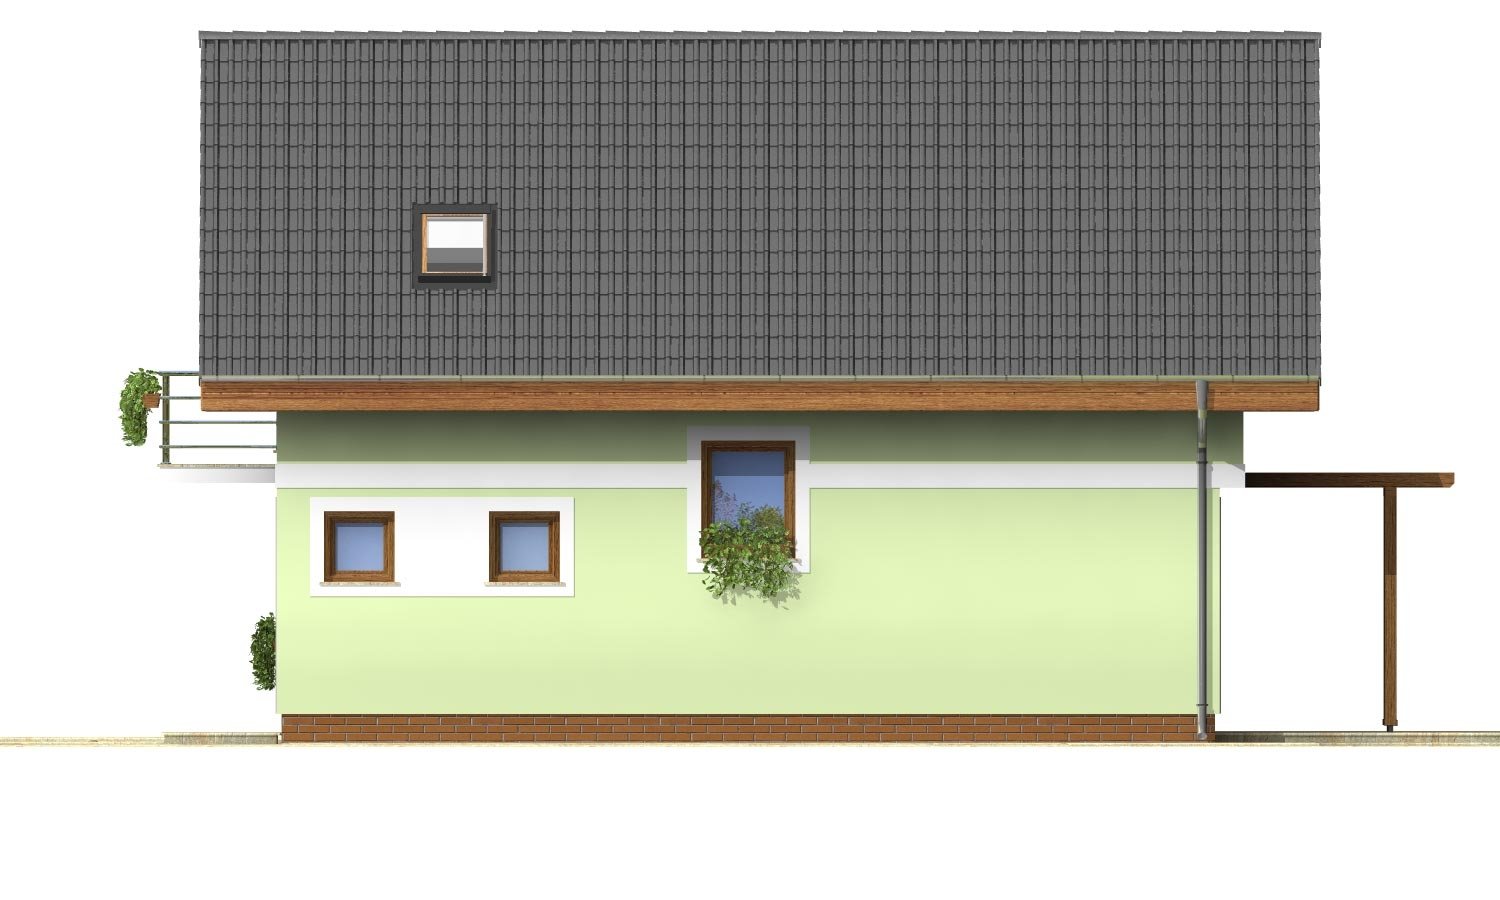 Pohľad 4. - Projekt jednoduchého domu na úzký pozemek s čelním vstupem.